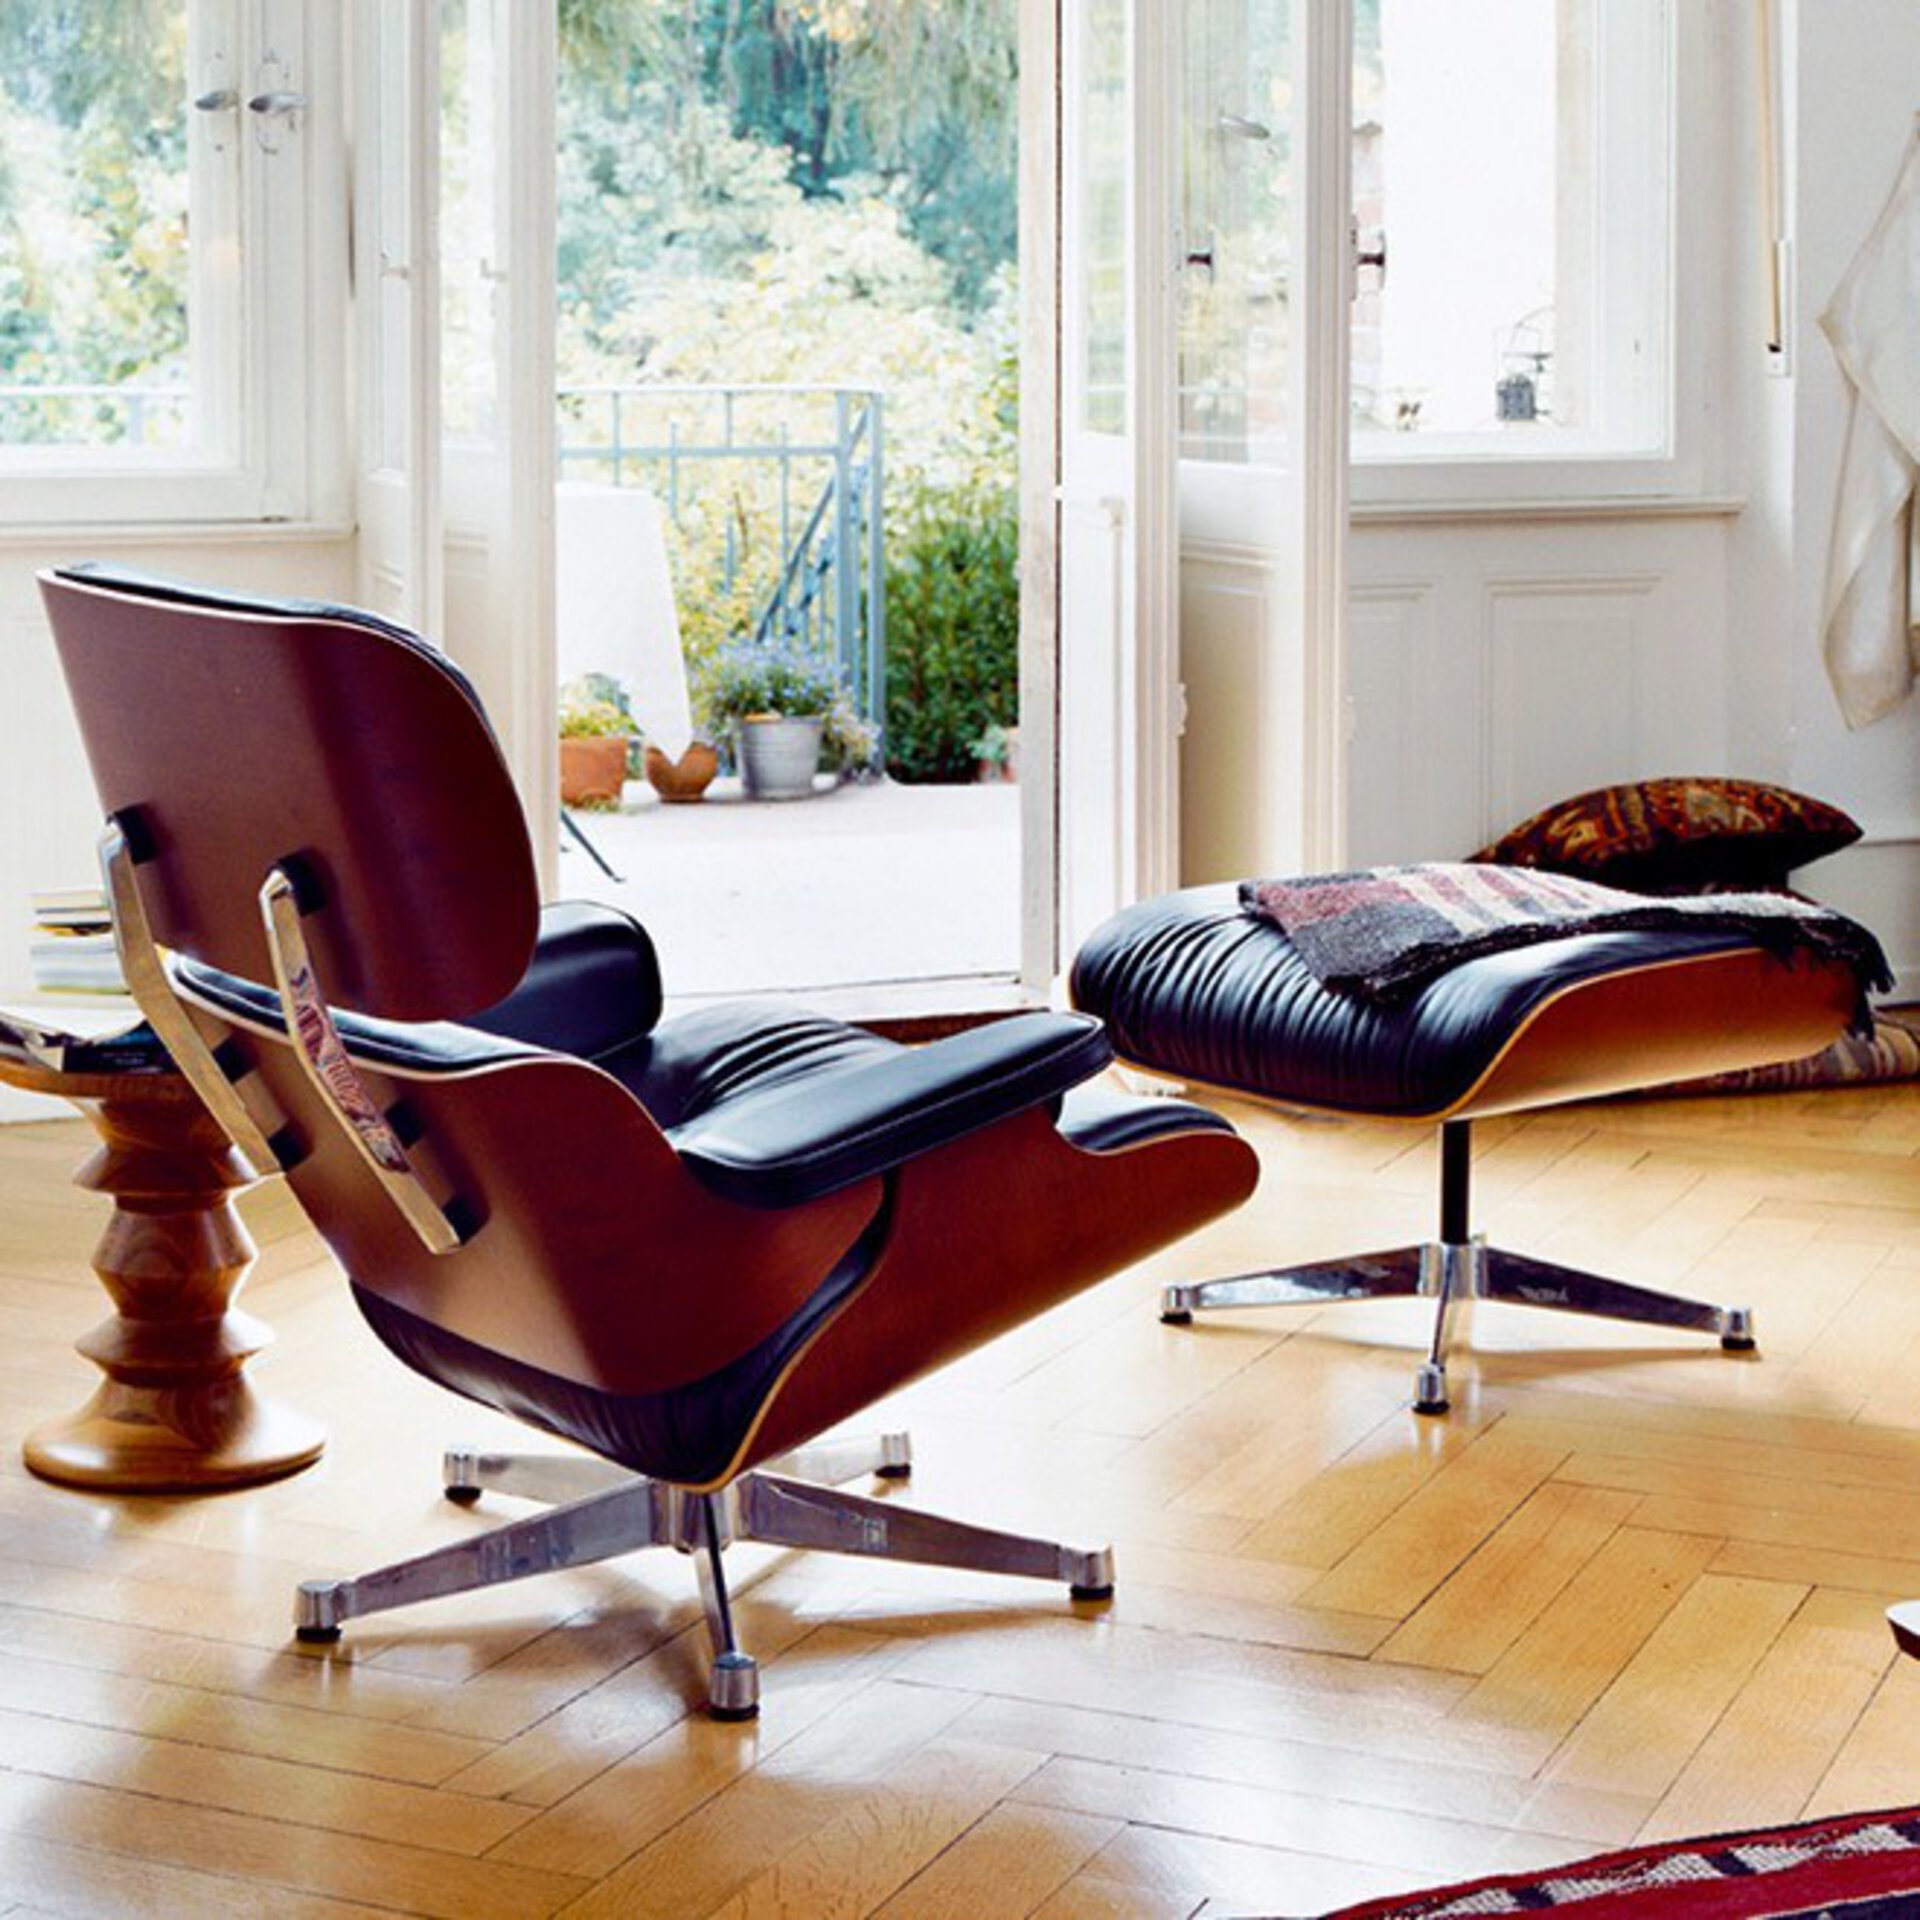 Der Lounge Chair ist der wohl berühmteste Sitzplatz der Welt. Design zum Leben bei interni by inhofer